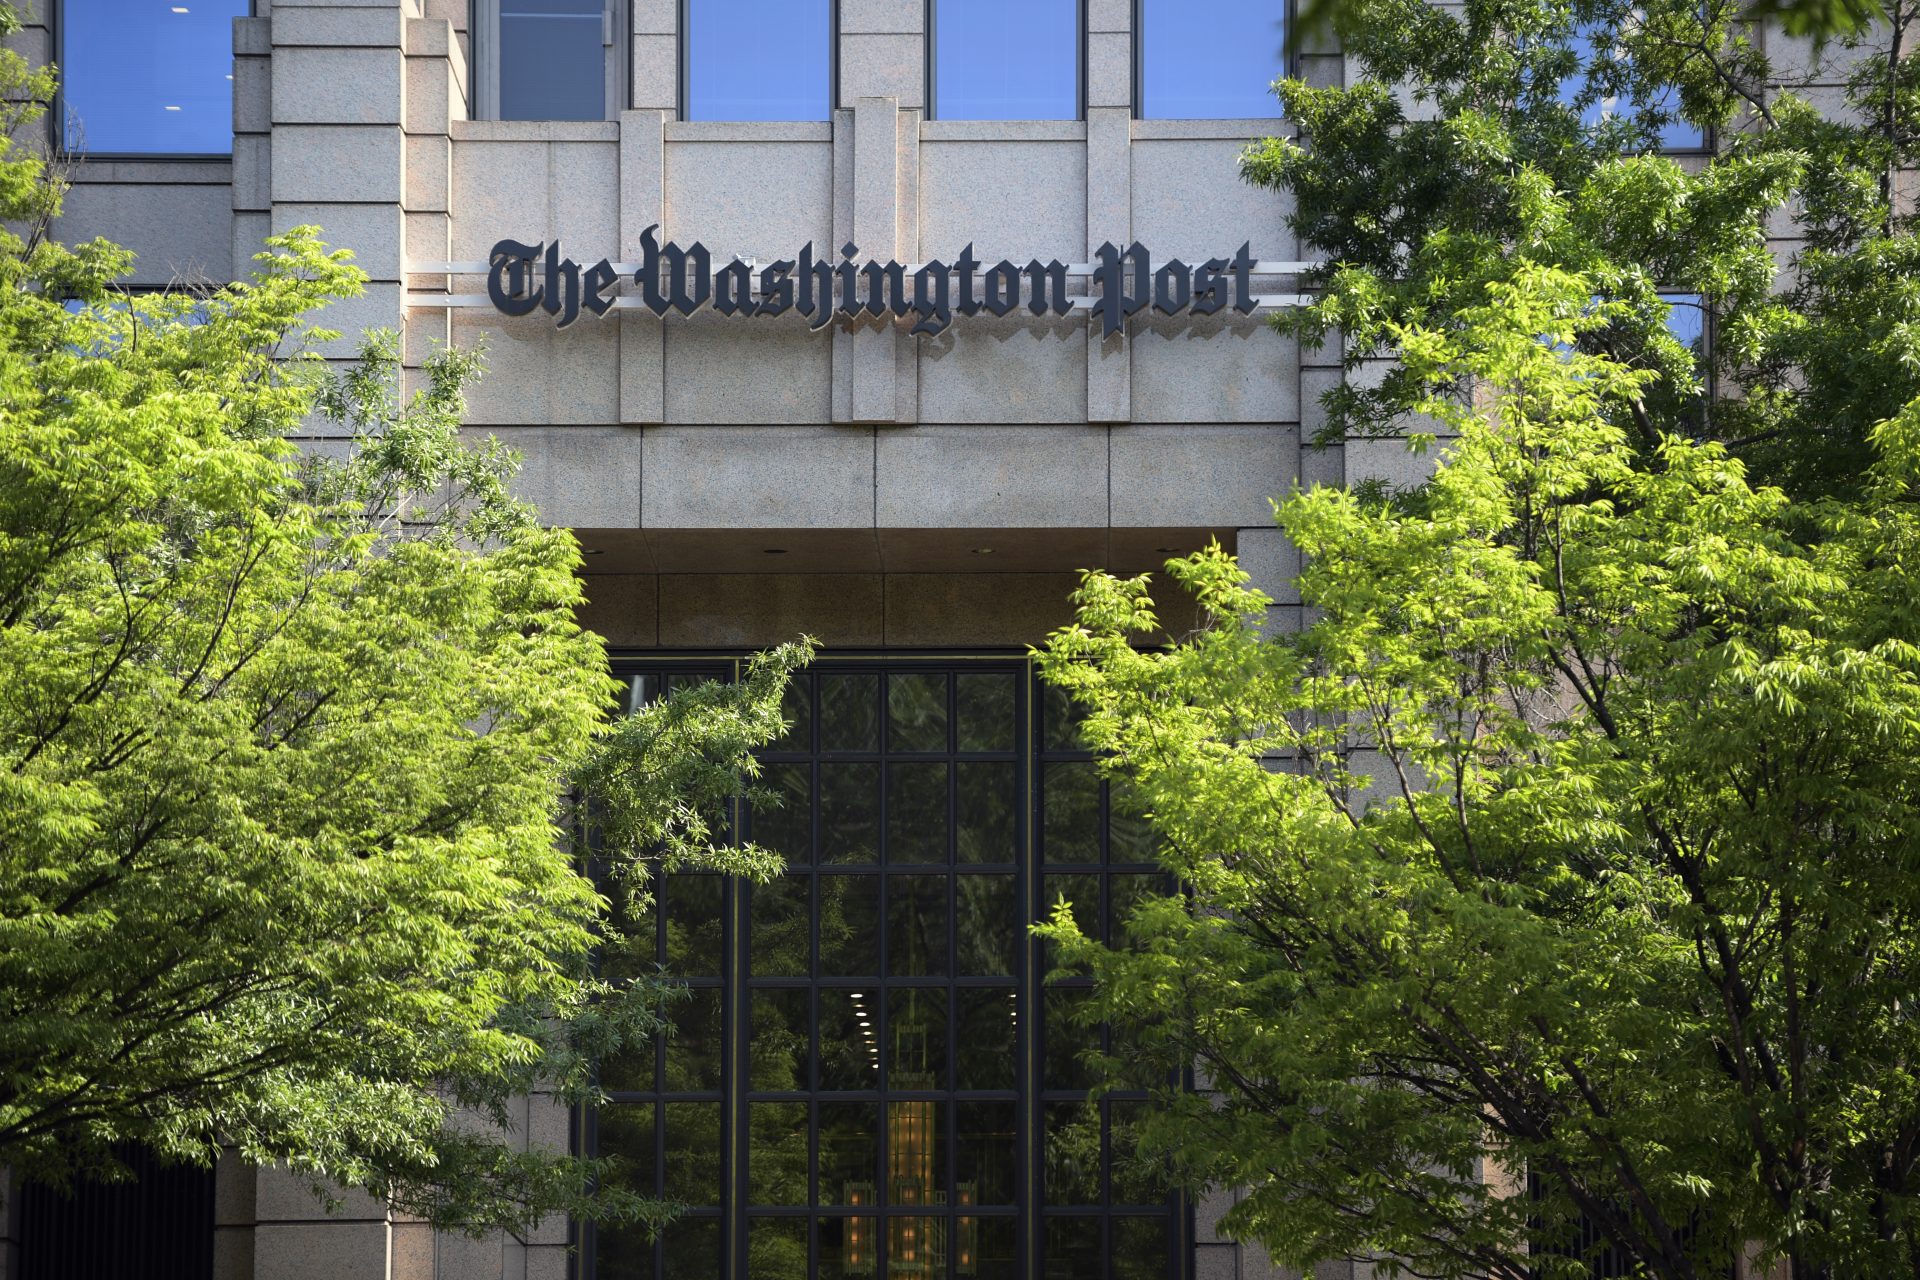 Redacția Washington Post va intra timp de 24 de ore în grevă, pe fondul prelungirii negocierilor